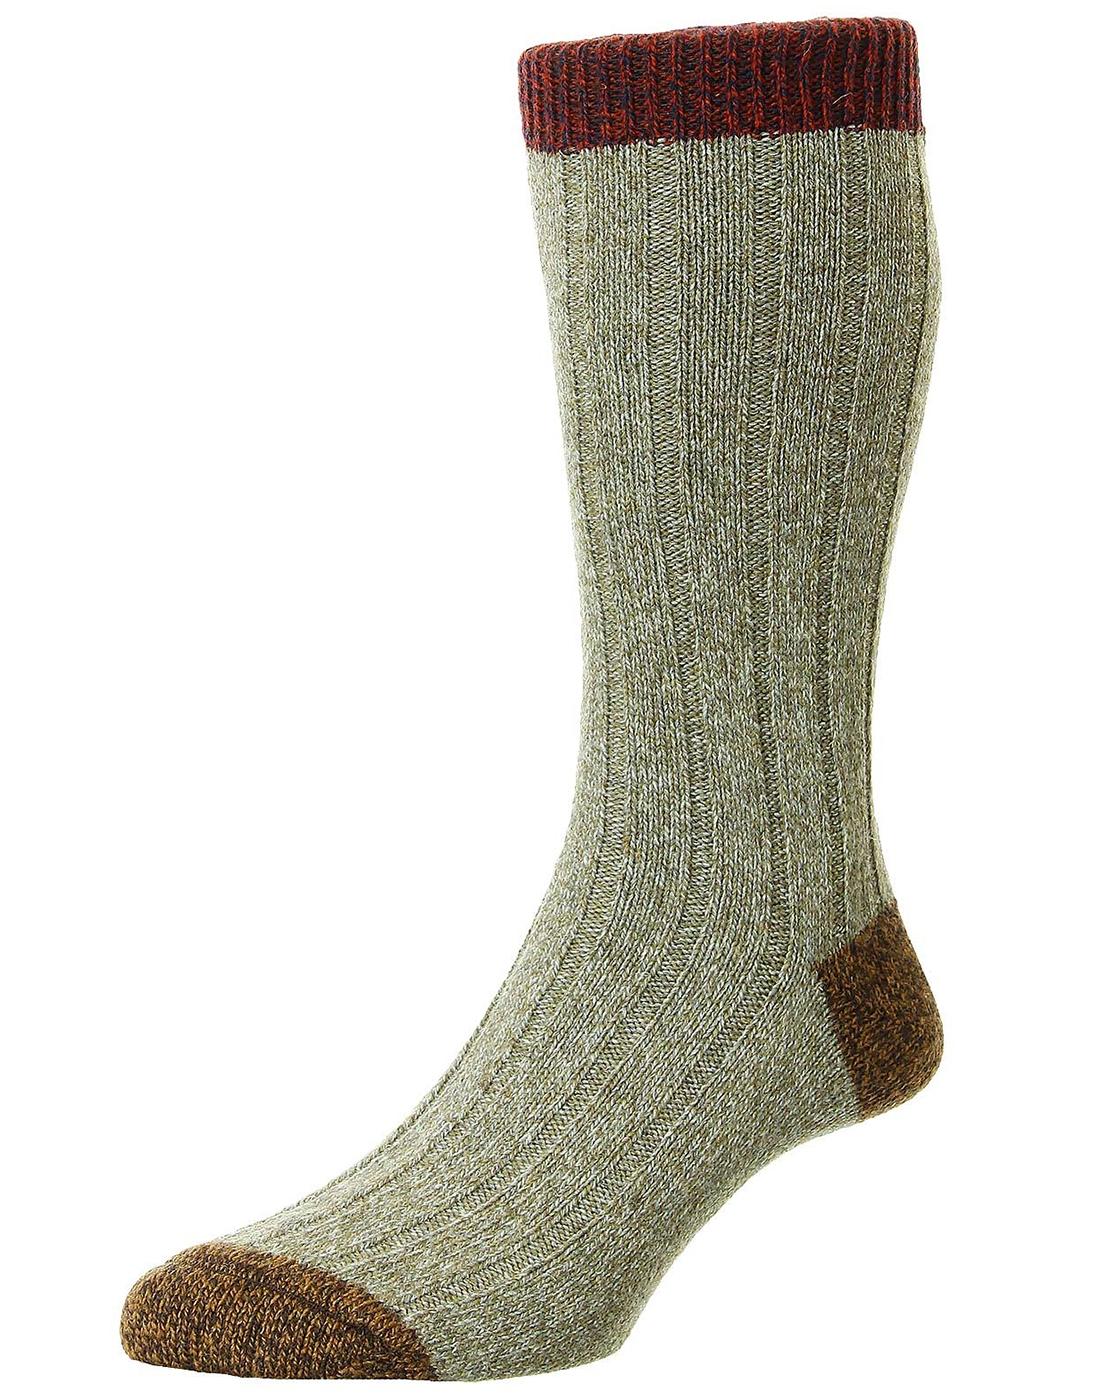 + Burghley SCOTT-NICHOL 6x2 Rib Wool Mens Socks